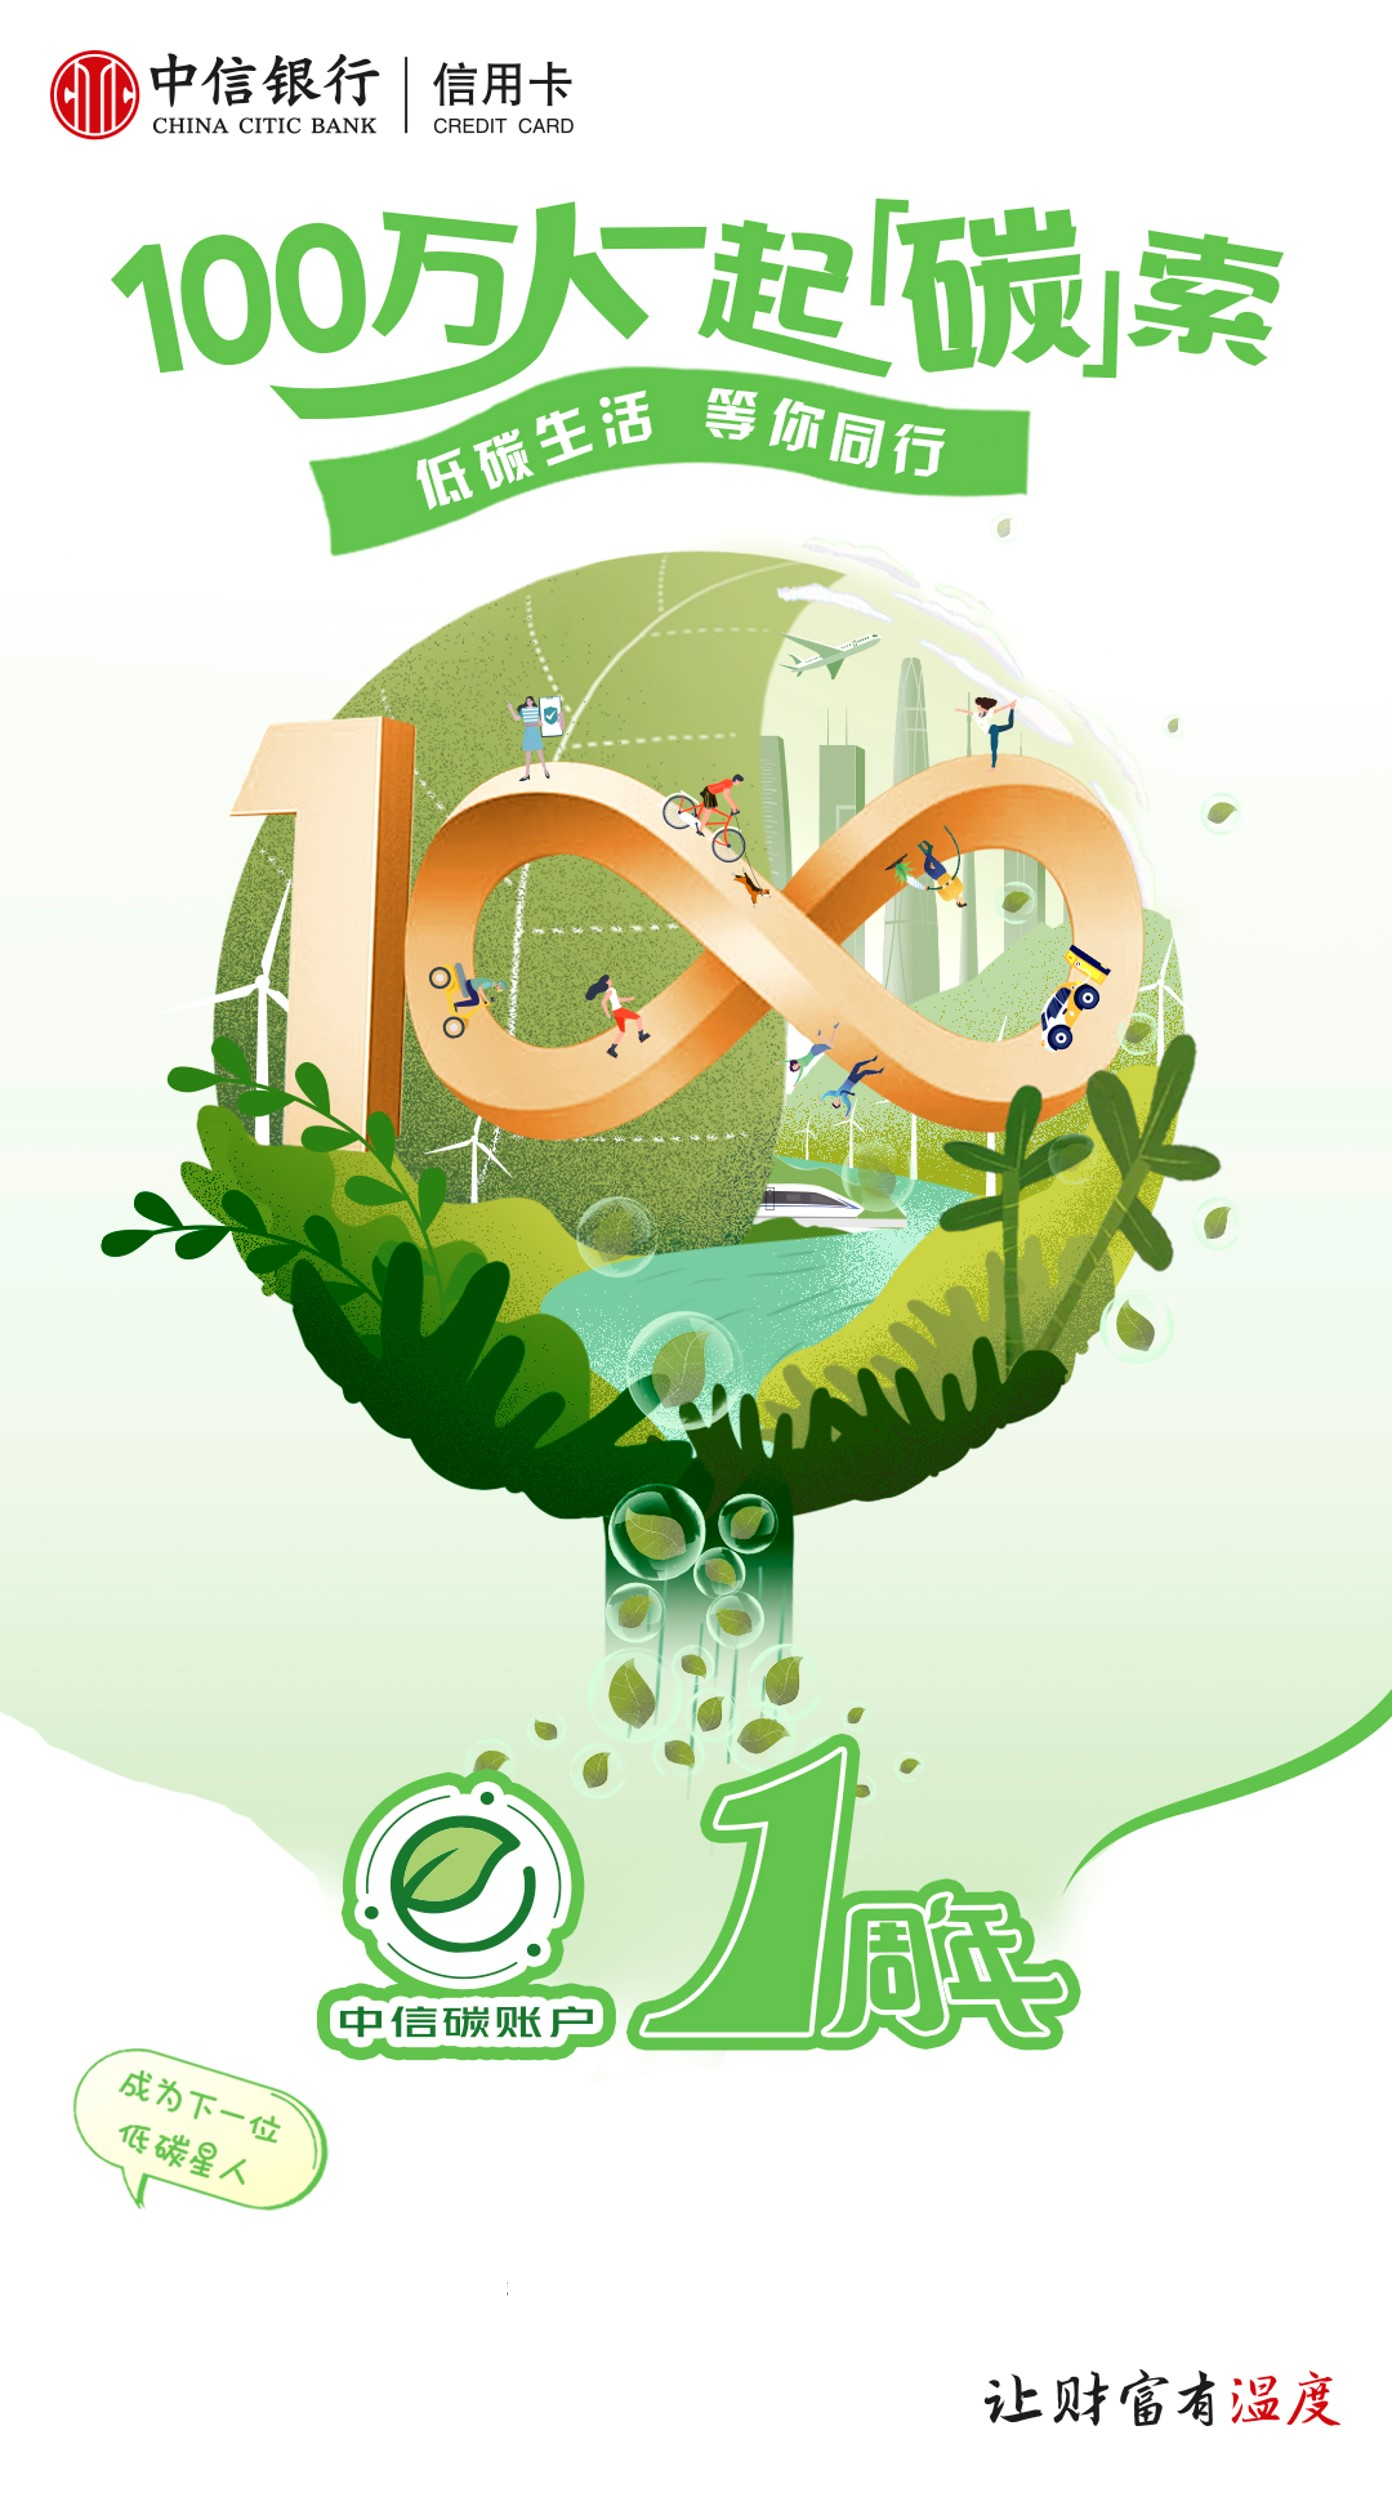 守护青山绿水珍爱地球家园“中信碳账户”上线1周年开户量超100万